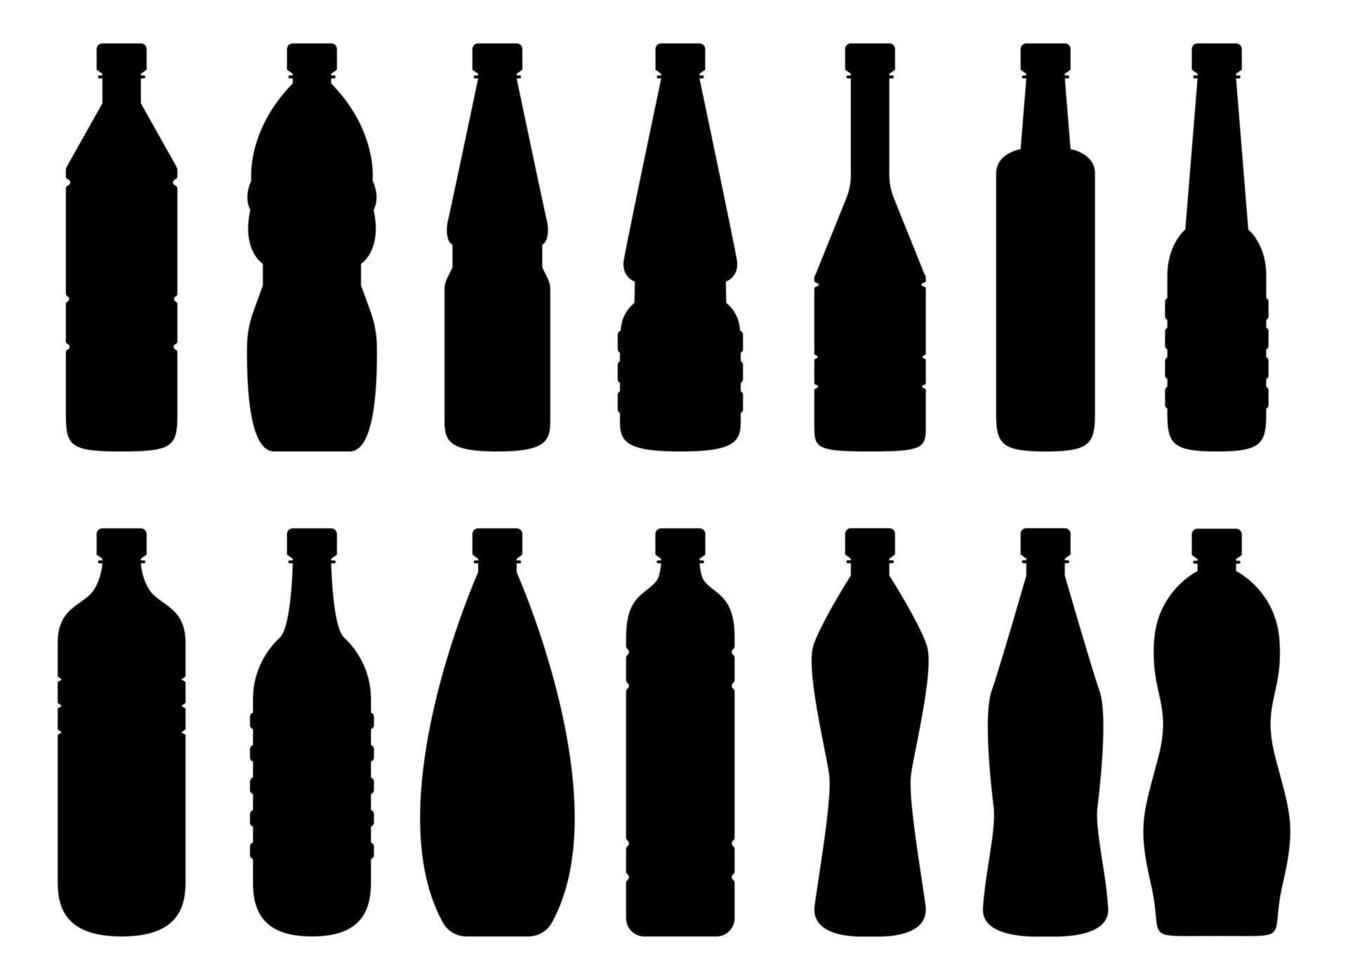 Plastic bottle clipart vector design illustration isolated on white background